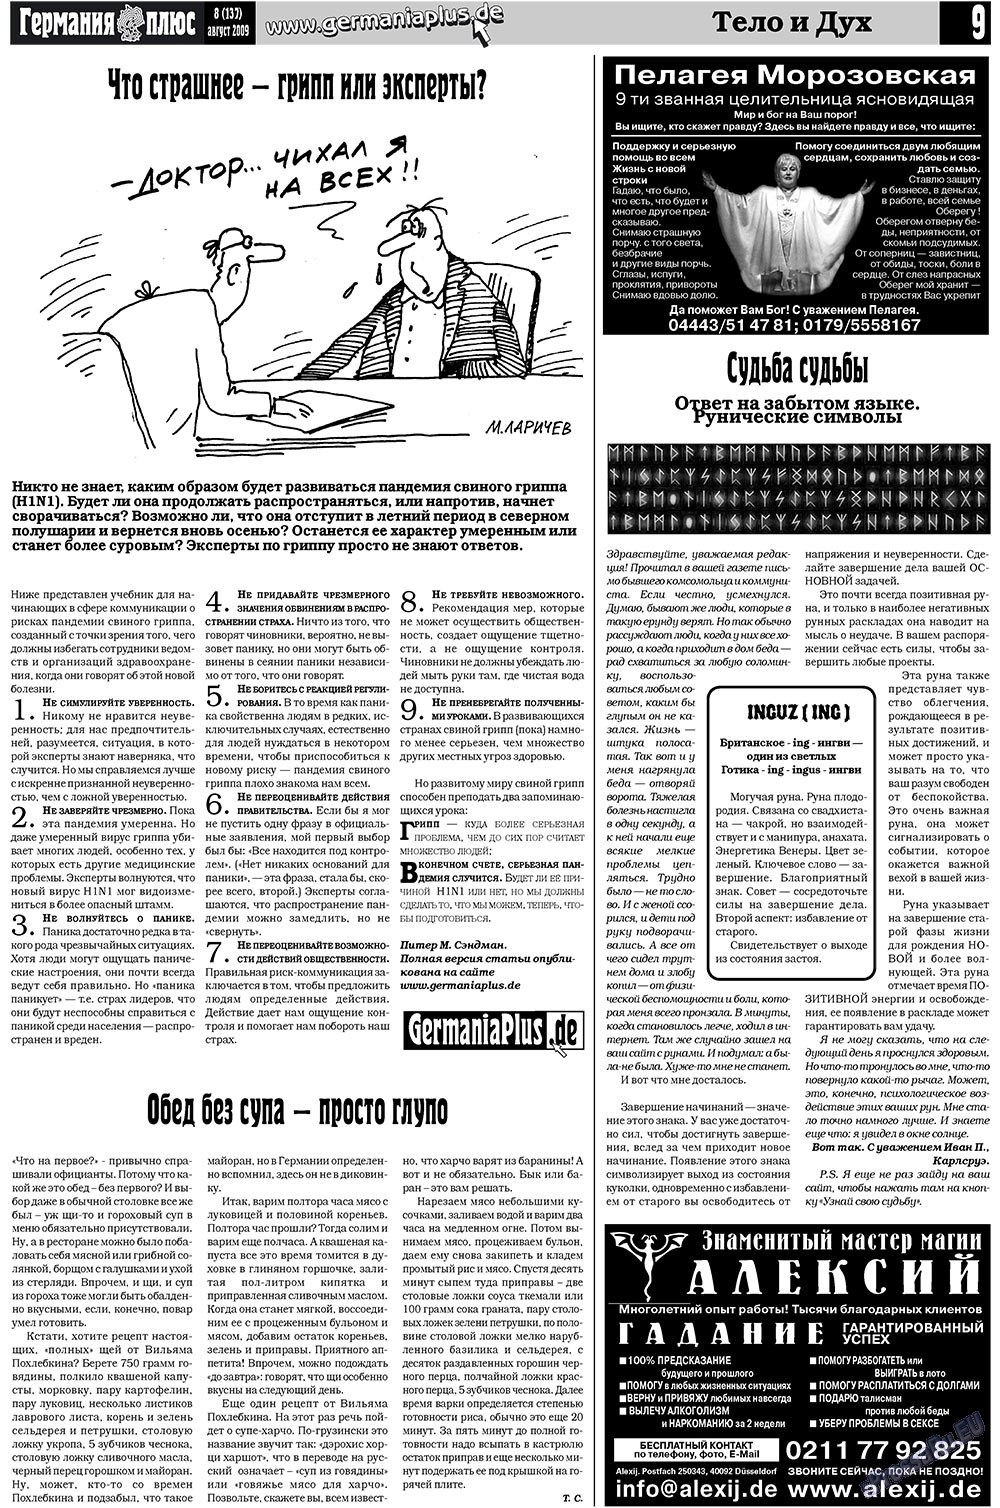 Германия плюс (газета). 2009 год, номер 8, стр. 13